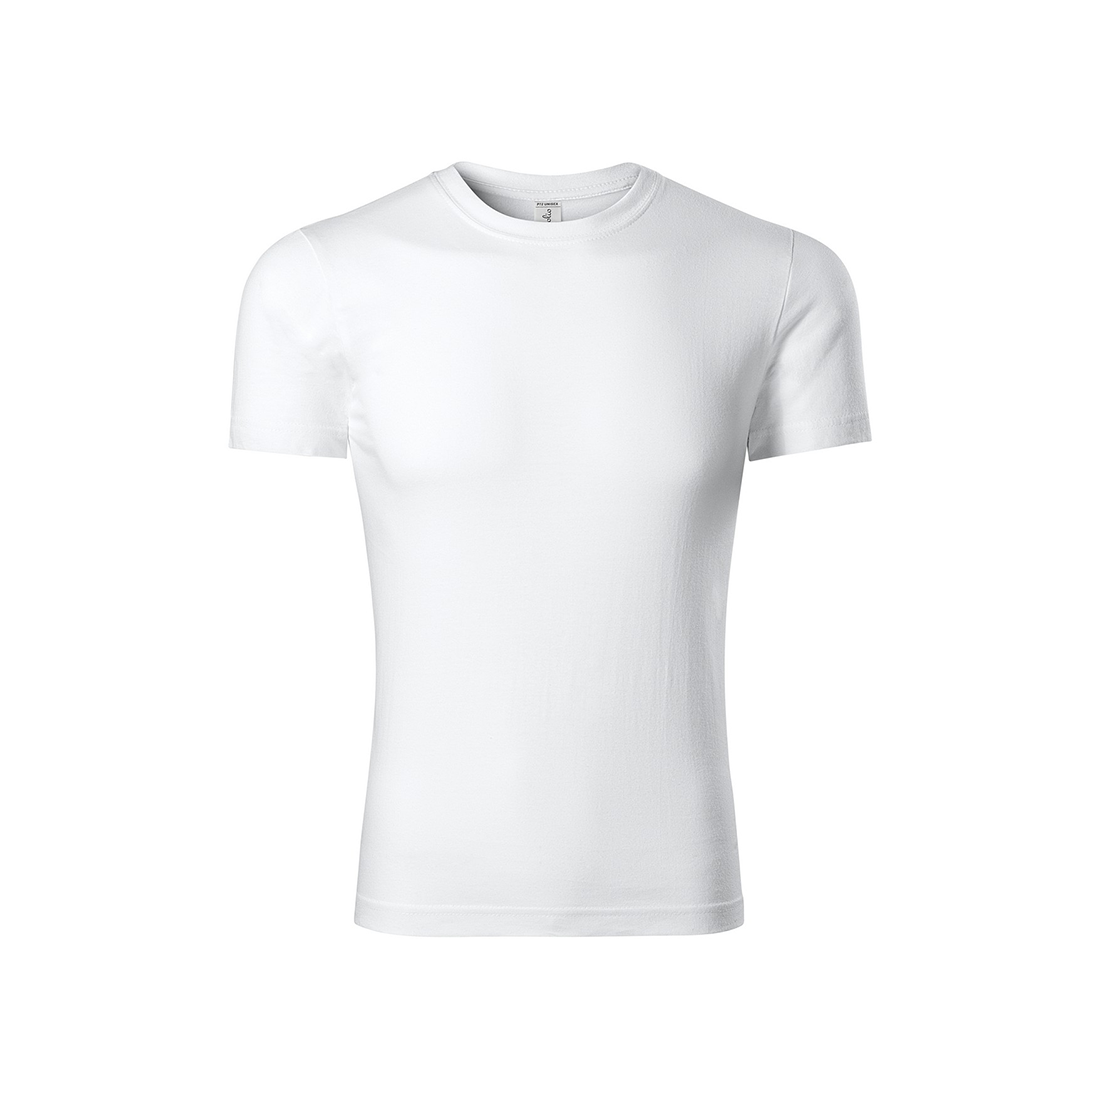 Baumwoll-T-Shirt für Kinder - Arbeitskleidung